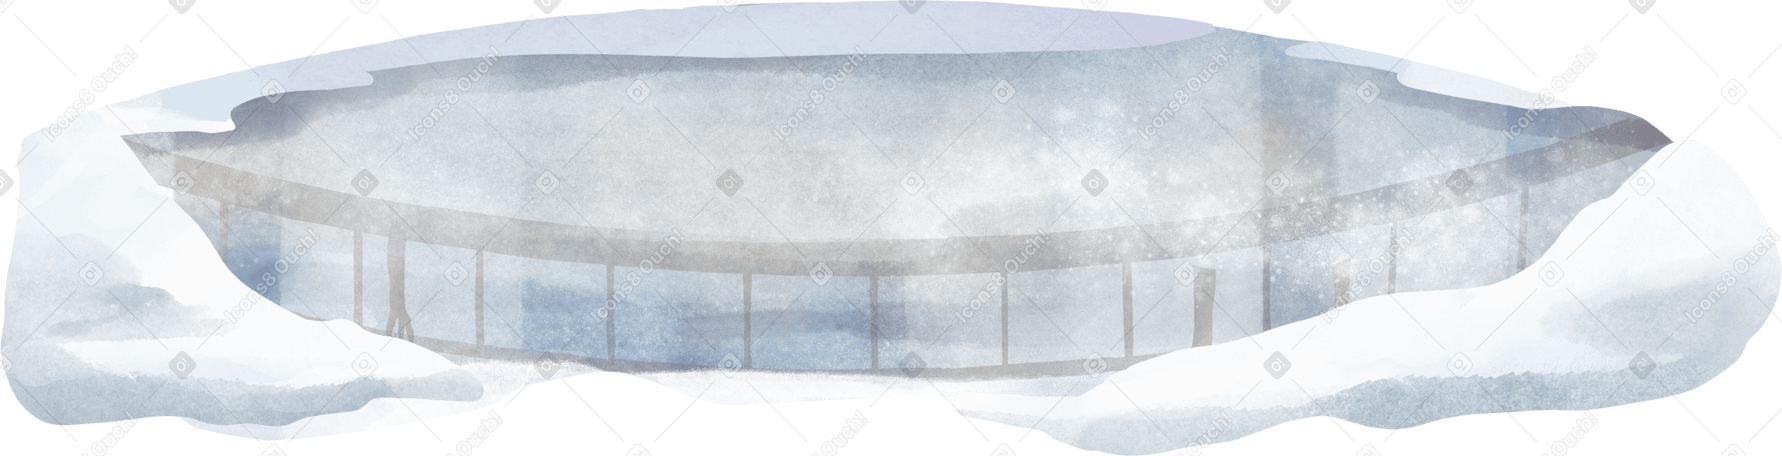 frozen lake Illustration in PNG, SVG